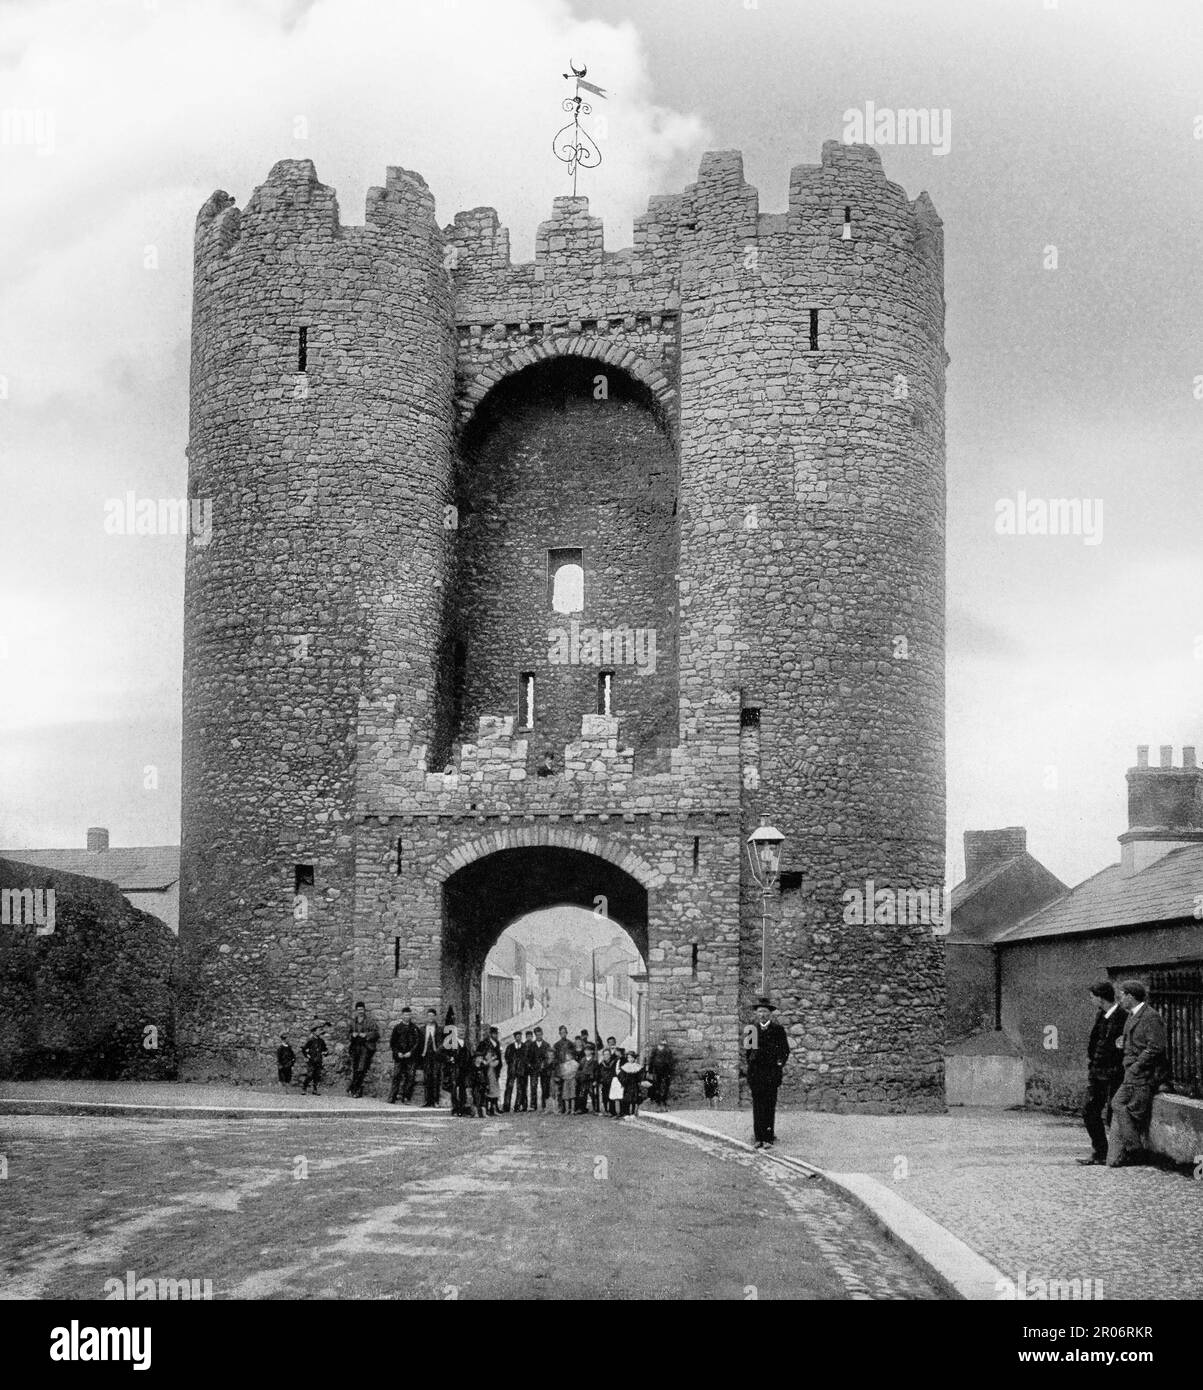 Ein Blick aus dem späten 19. Jahrhundert auf das Saint Laurence Gate, erbaut im 13. Jahrhundert als Teil der Festungen der mittelalterlichen Stadt Drogheda in der Grafschaft Louth, Irland. Es ist ein barbikaner oder verteidigtes Vorderwerk, das direkt vor dem ursprünglichen Tor stand, von dem keine Oberflächenspuren überlebt haben. Das Gebäude besteht aus zwei Türmen, jedes mit vier Etagen, verbunden durch eine Brücke oben, ein Eingangsbogen auf Straßenebene, unter dem ein Schlitz liegt, von dem aus ein Portcullis ursprünglich angehoben und abgesenkt werden konnte. Stockfoto